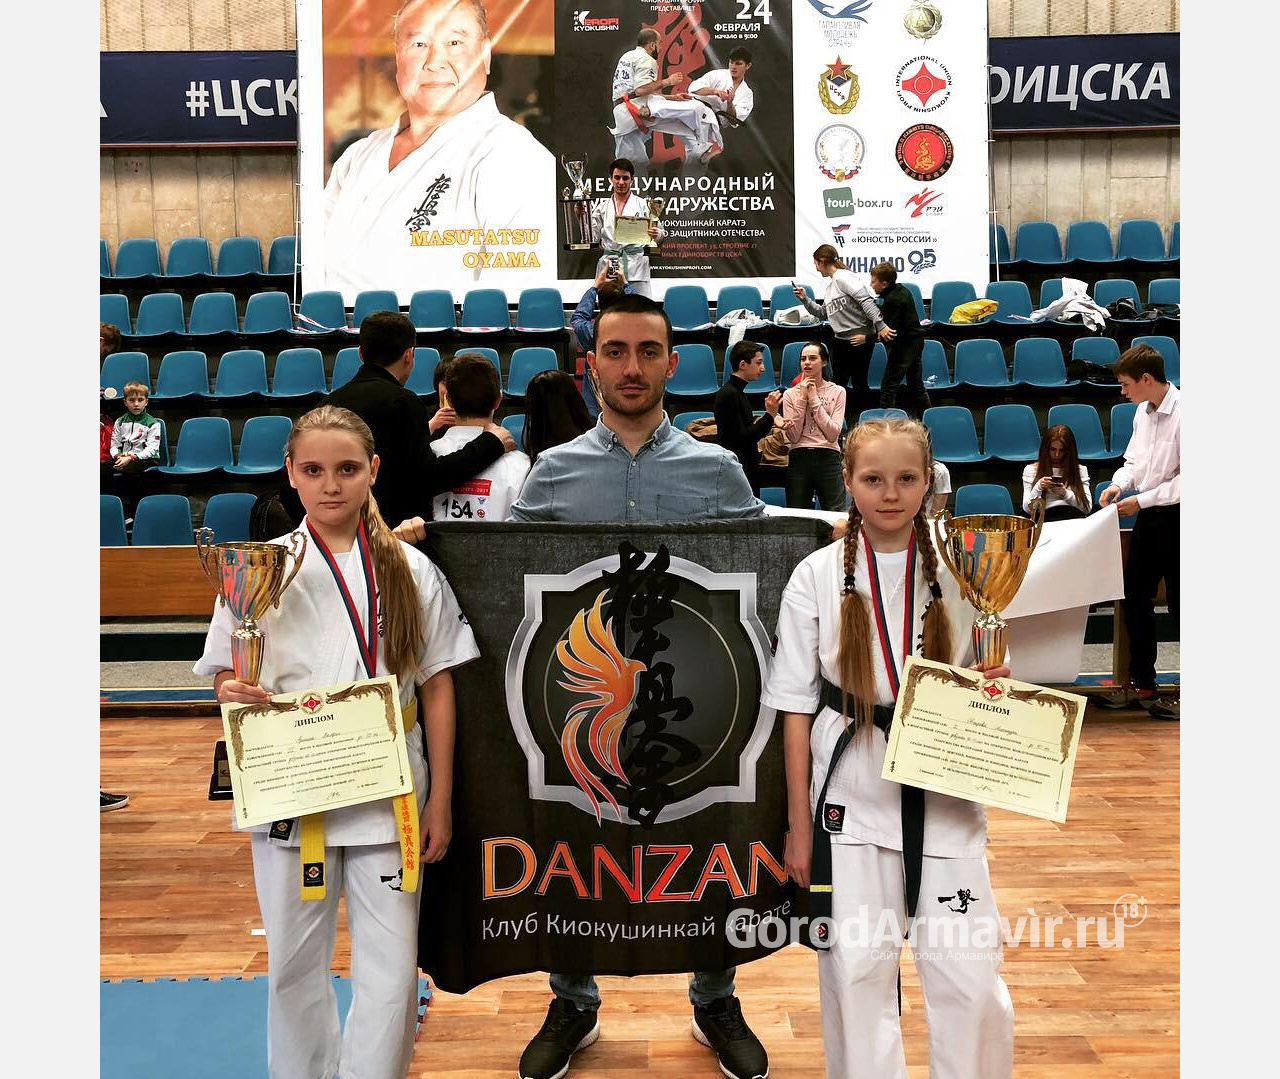 Армавирцы завоевали три медали на Международном кубке киокушинкай каратэ в Москве 